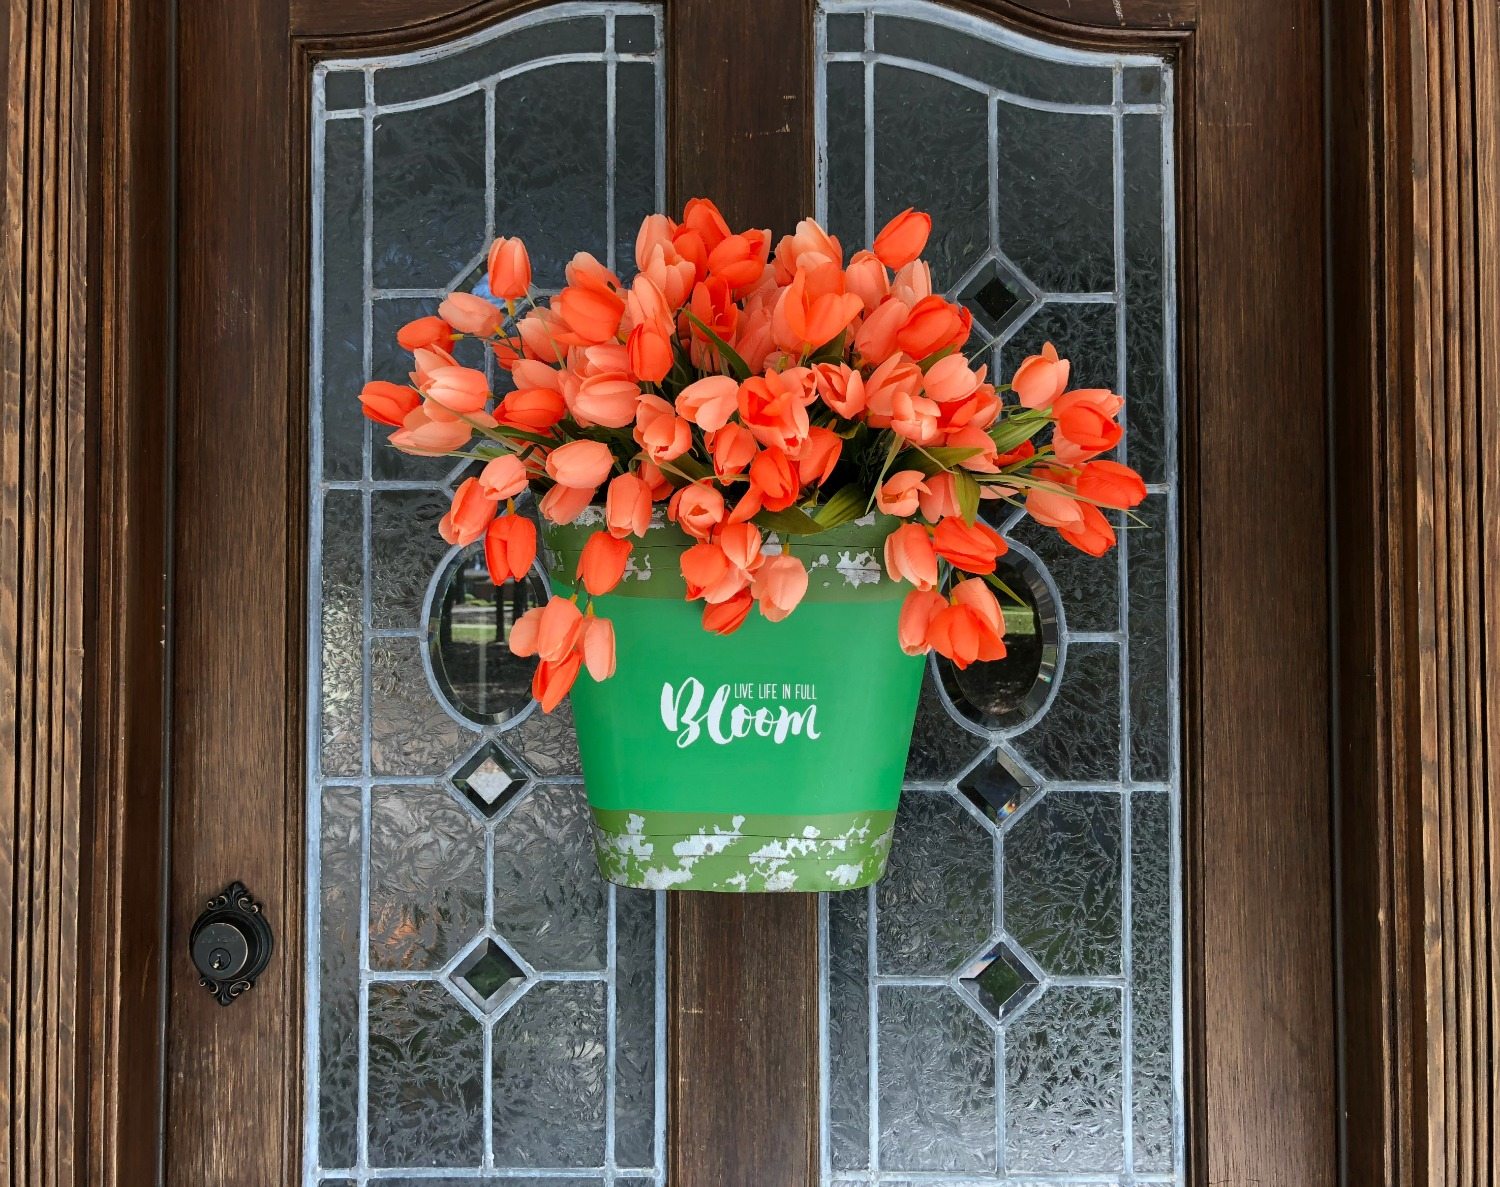 Tulips on the door